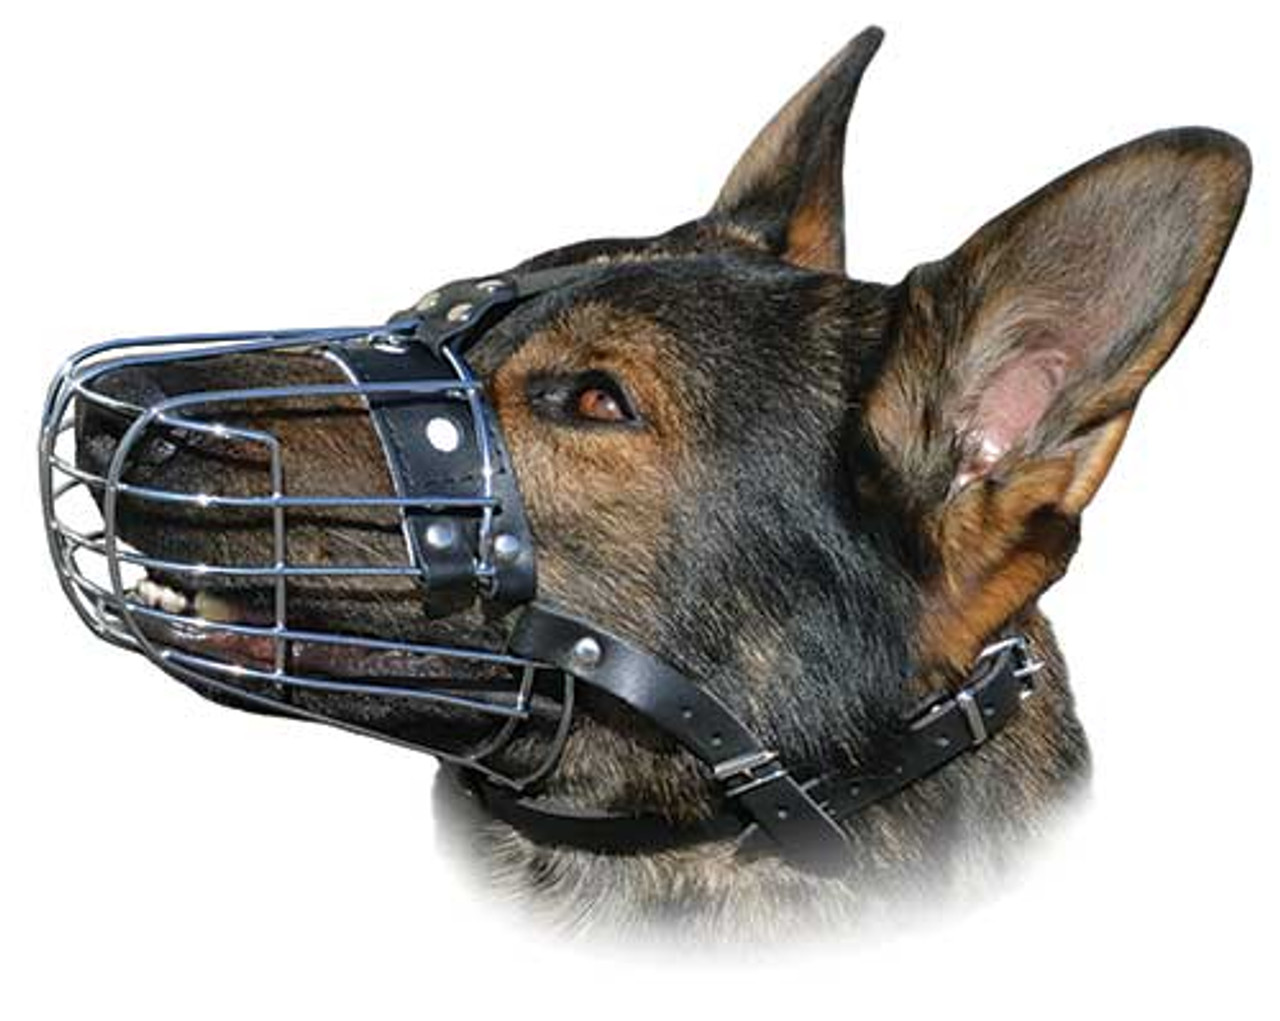 canine basket muzzle